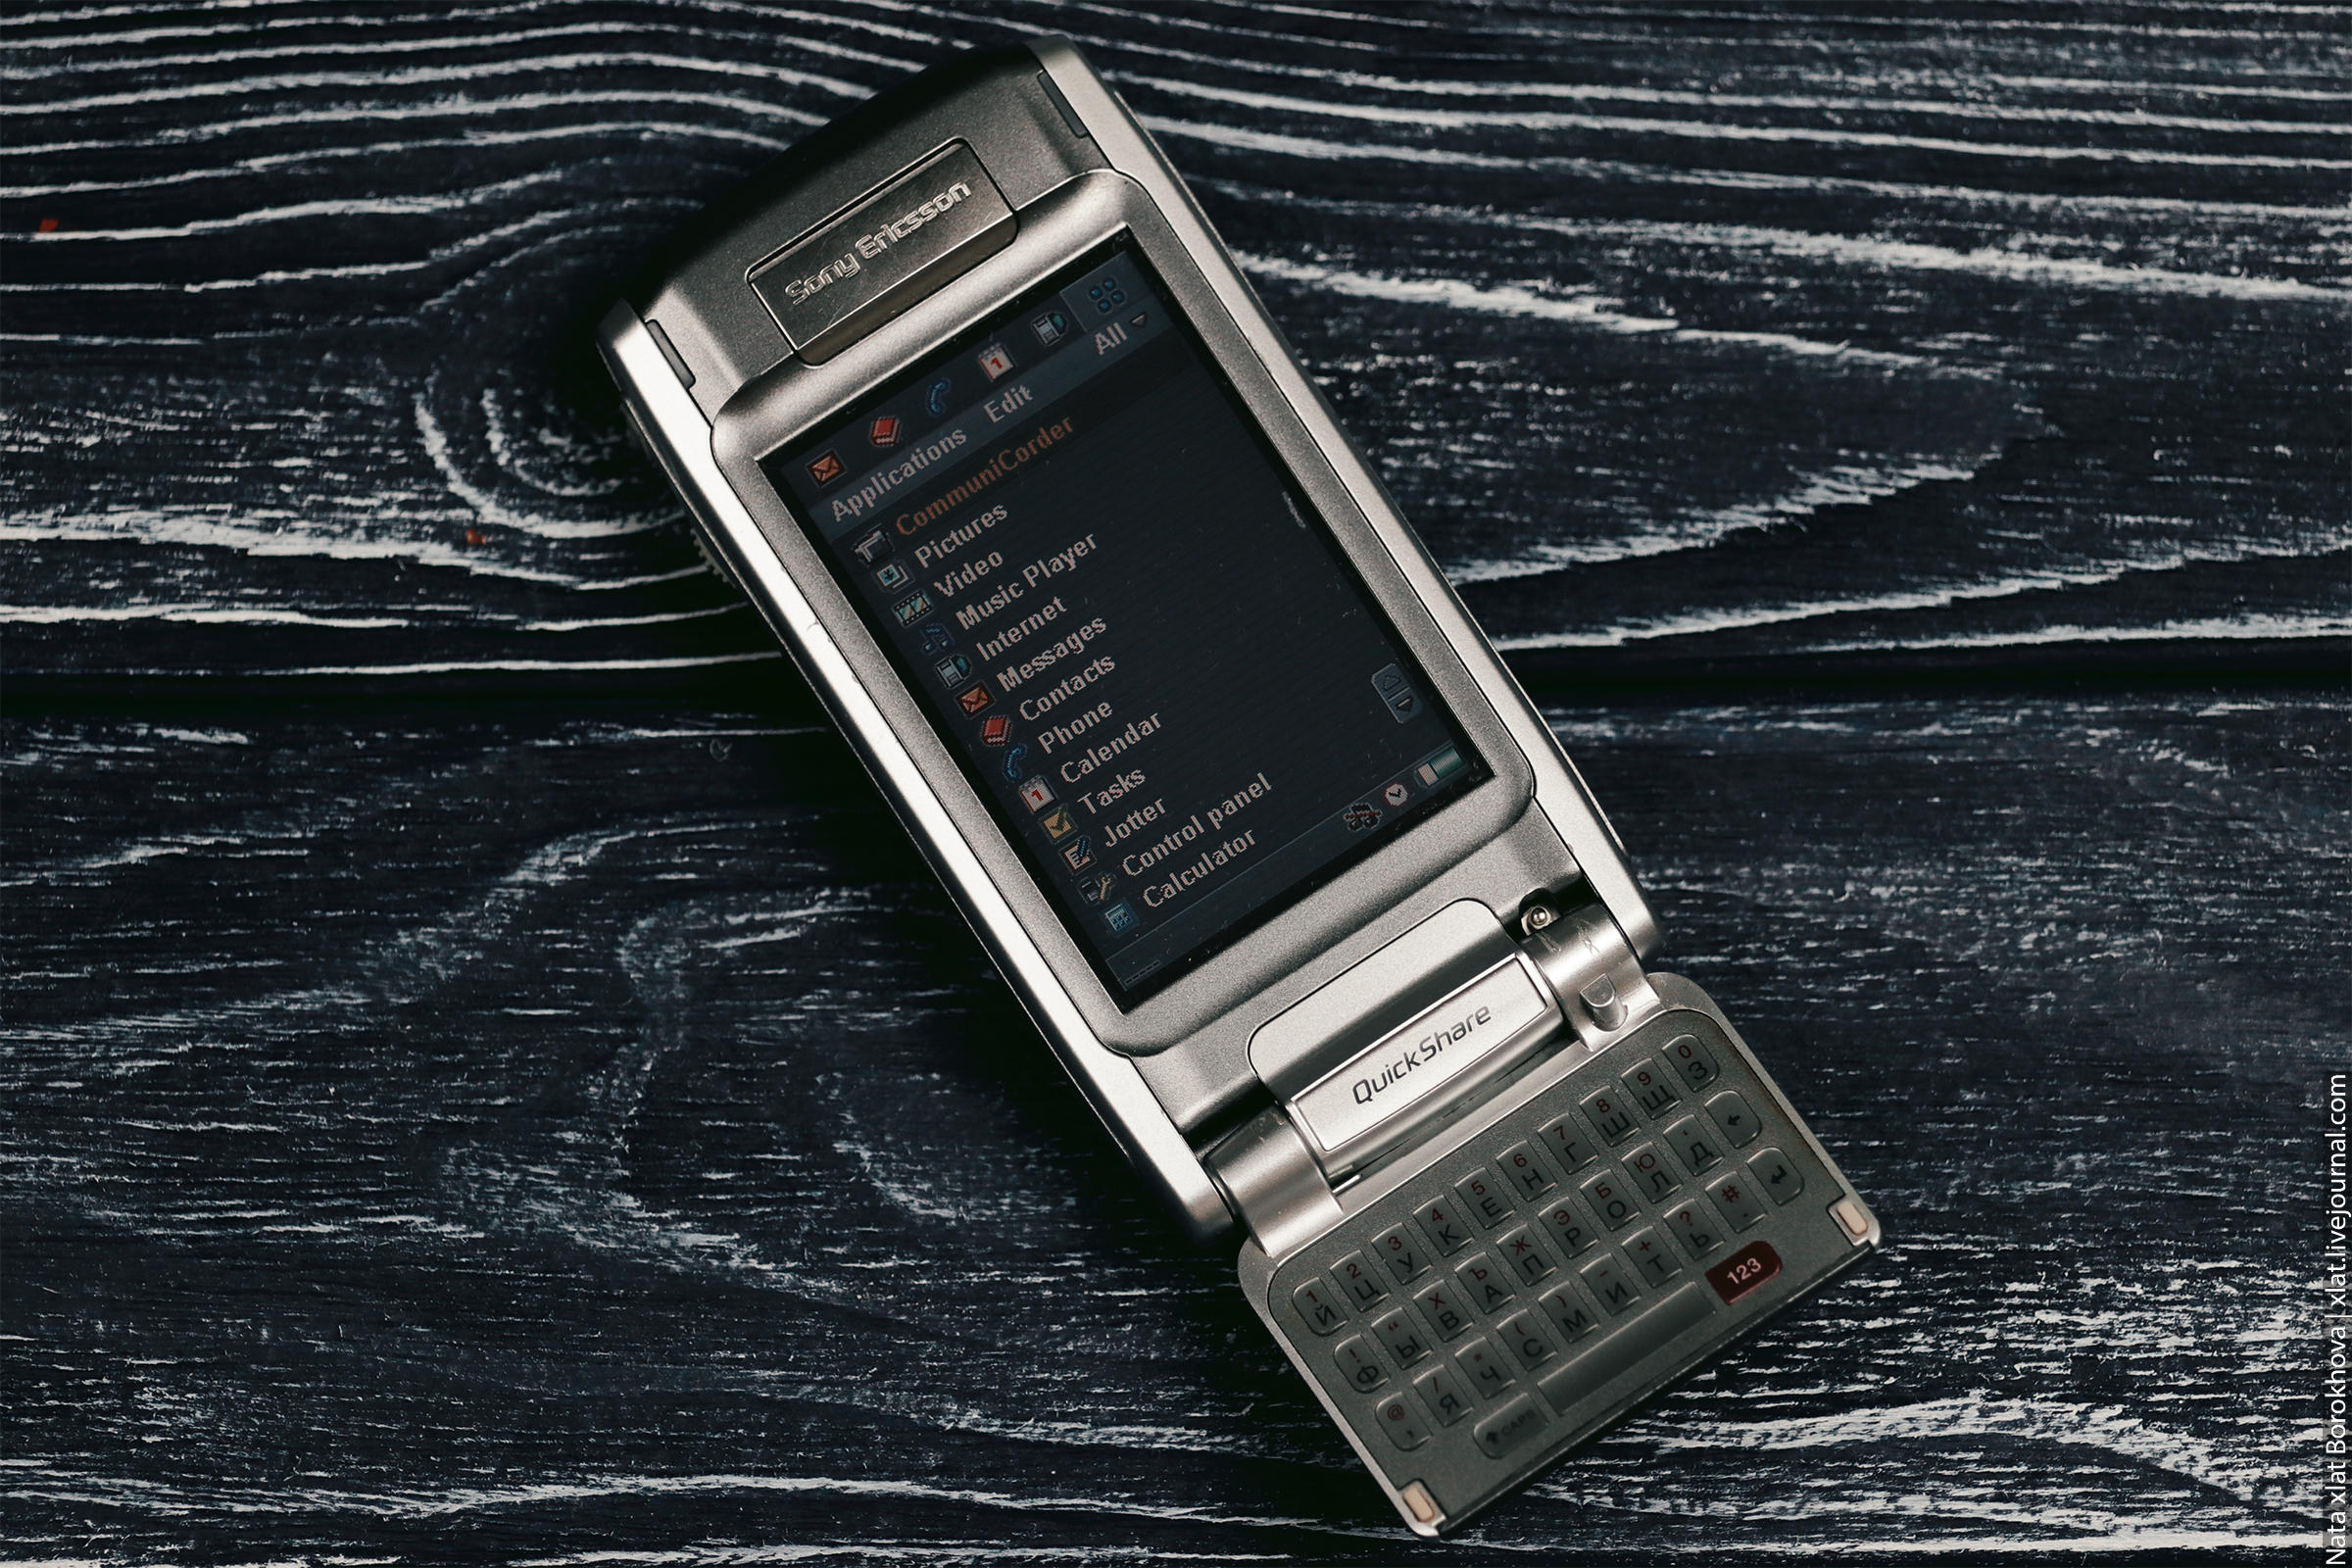 Sony Ericsson p910